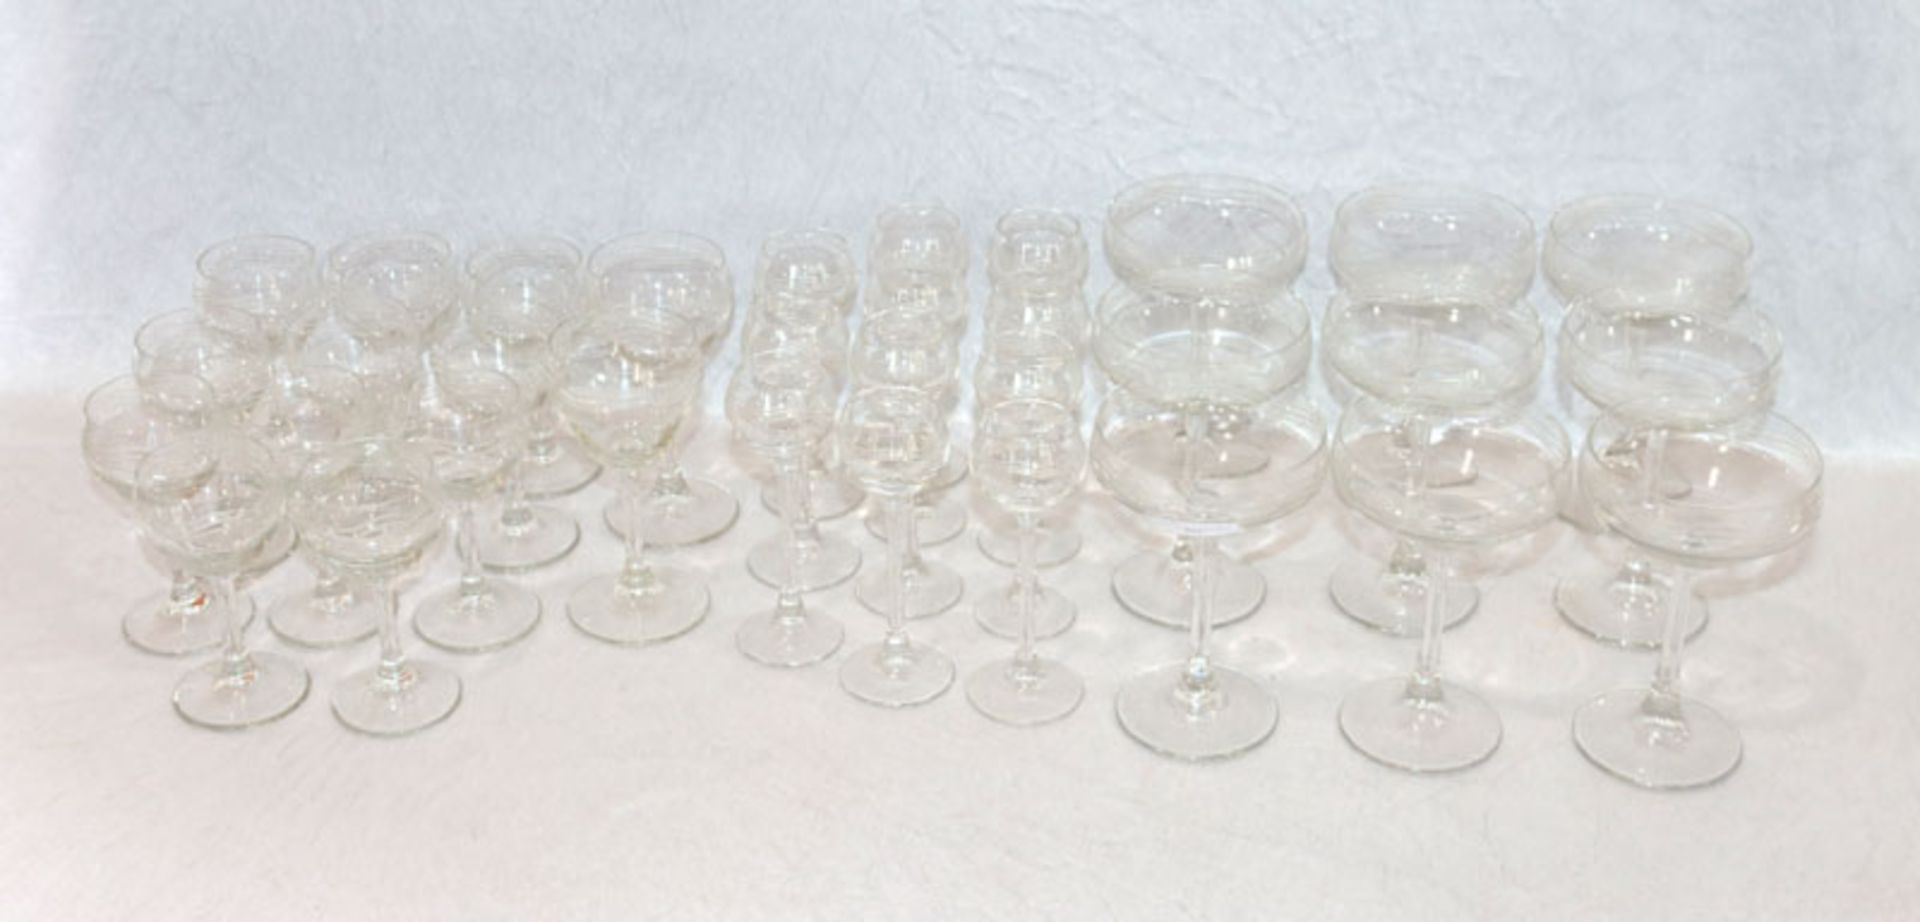 Trinkglas-Konvolut mit graviertem Wellendekor, 9 Sektschalen, 11 Likörschalen, 11 Schnapsgläser, 2